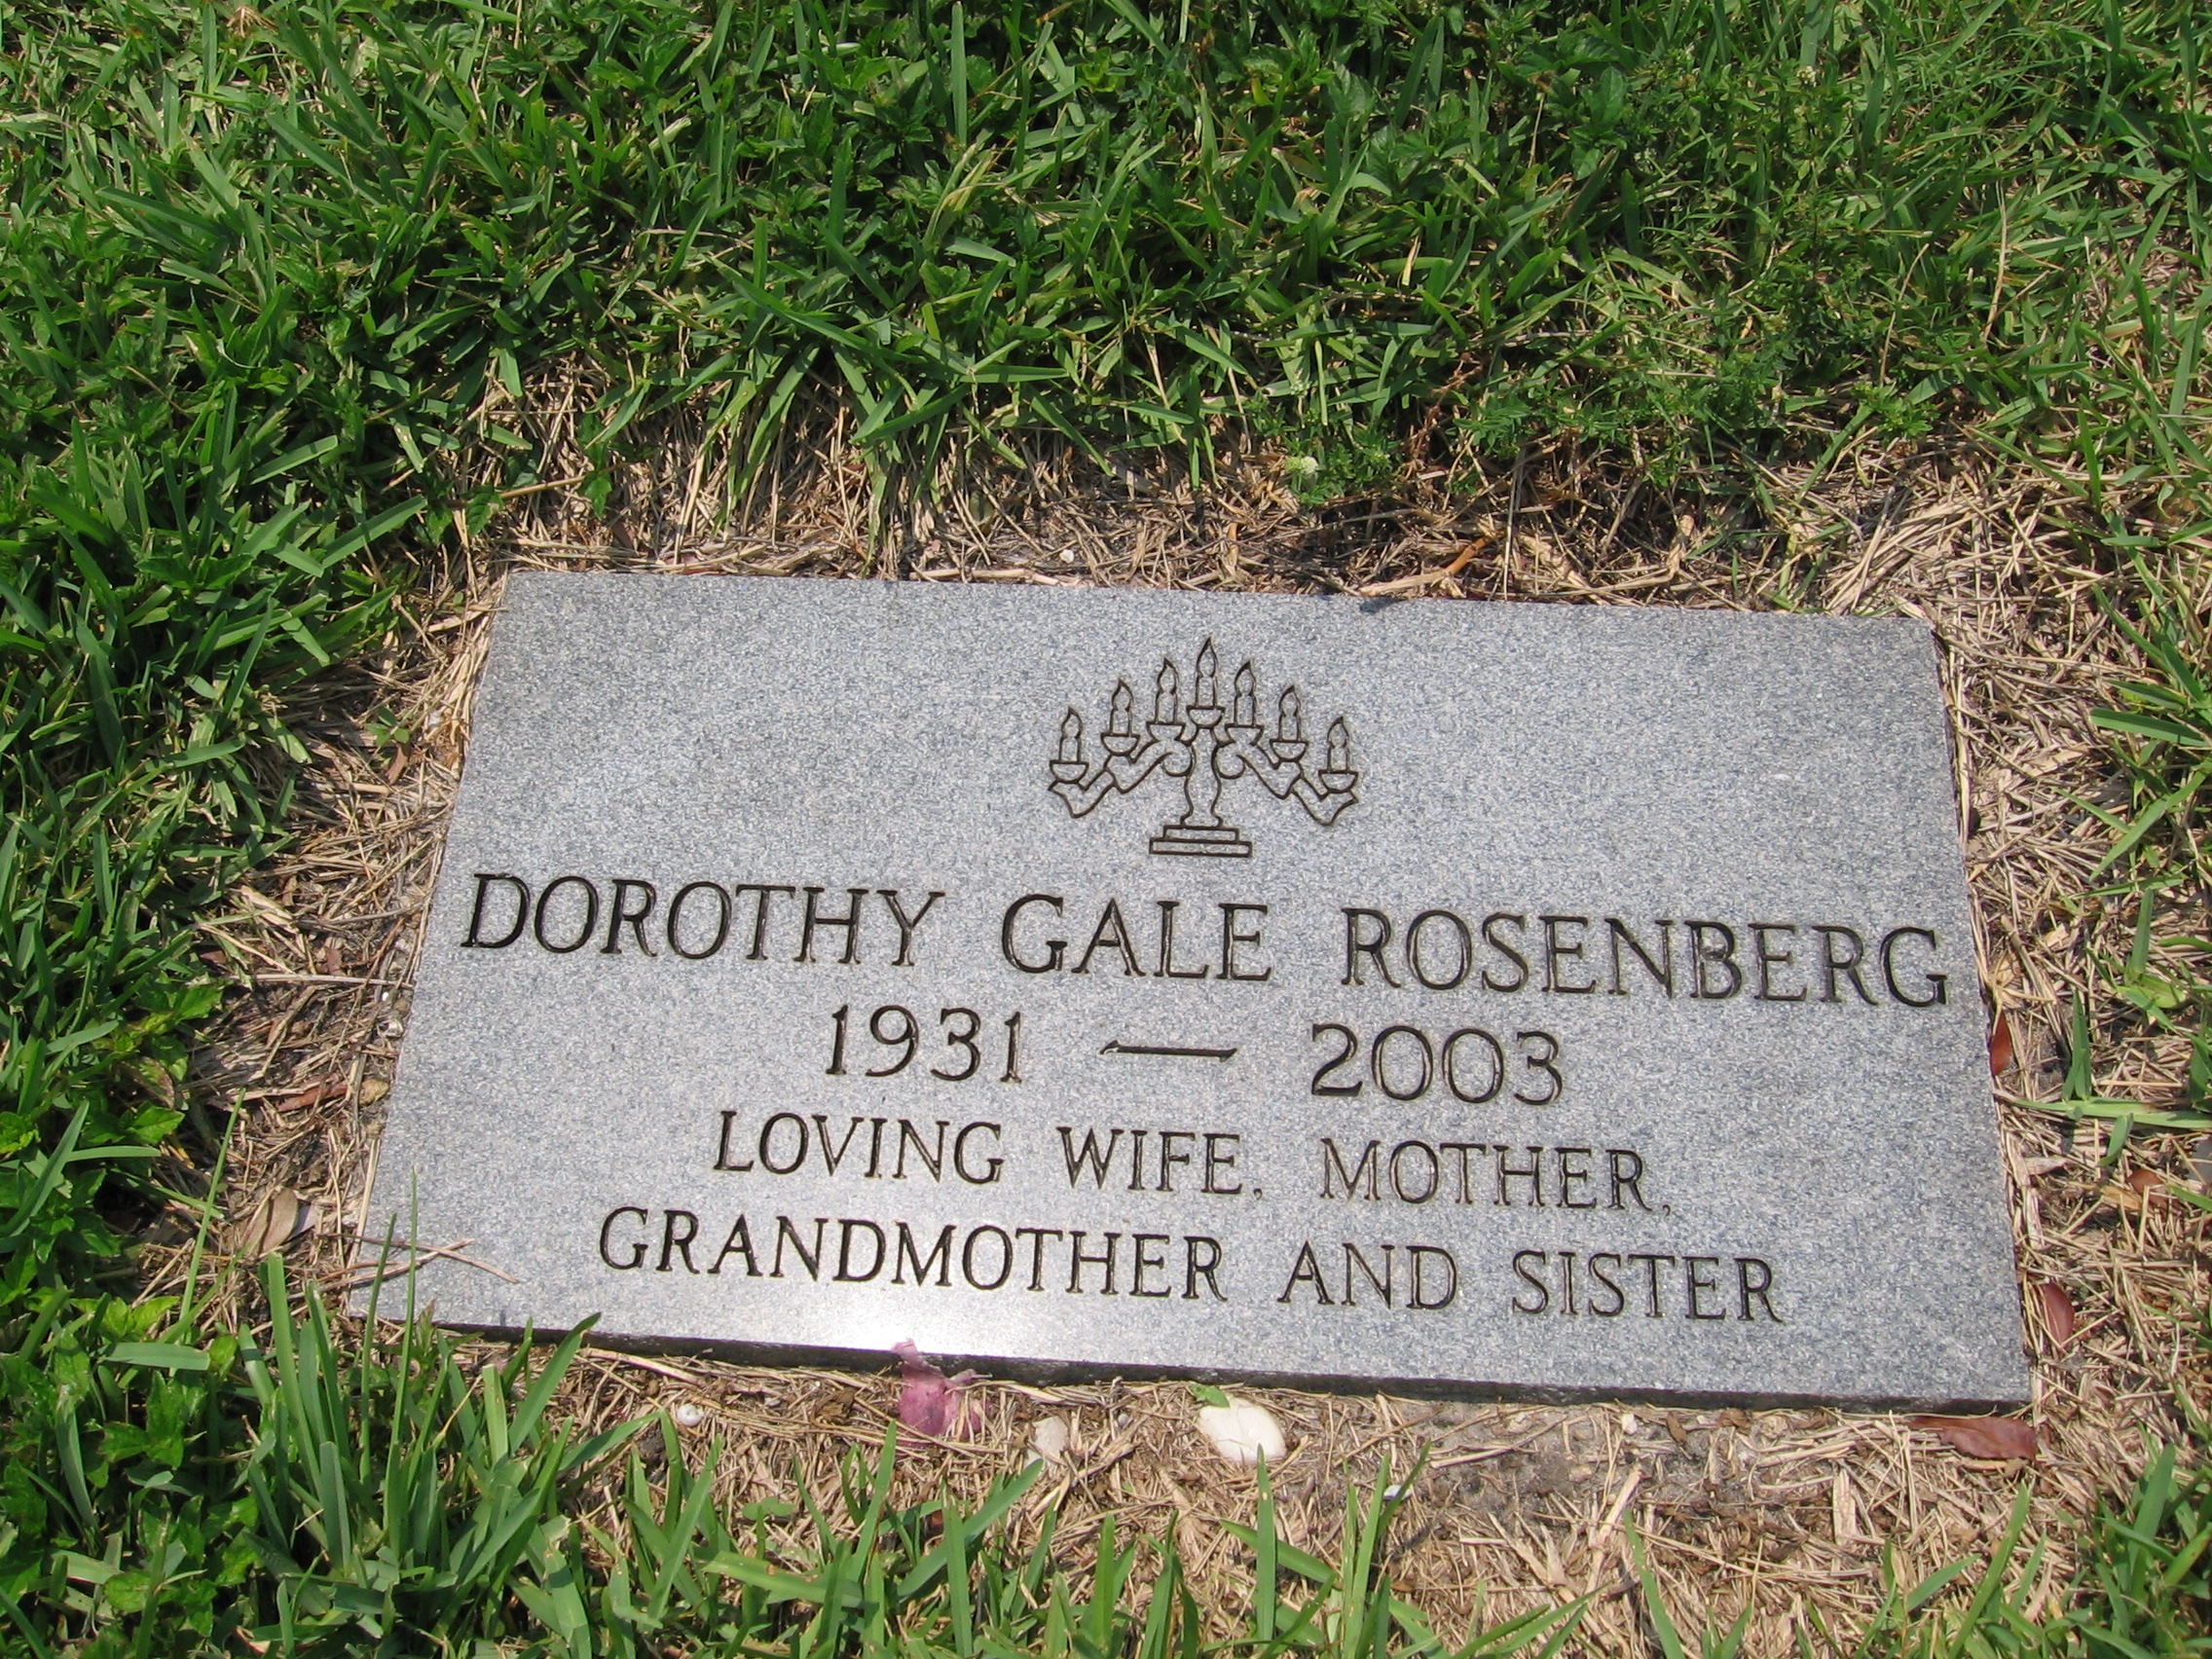 Dorothy Gale Rosenberg